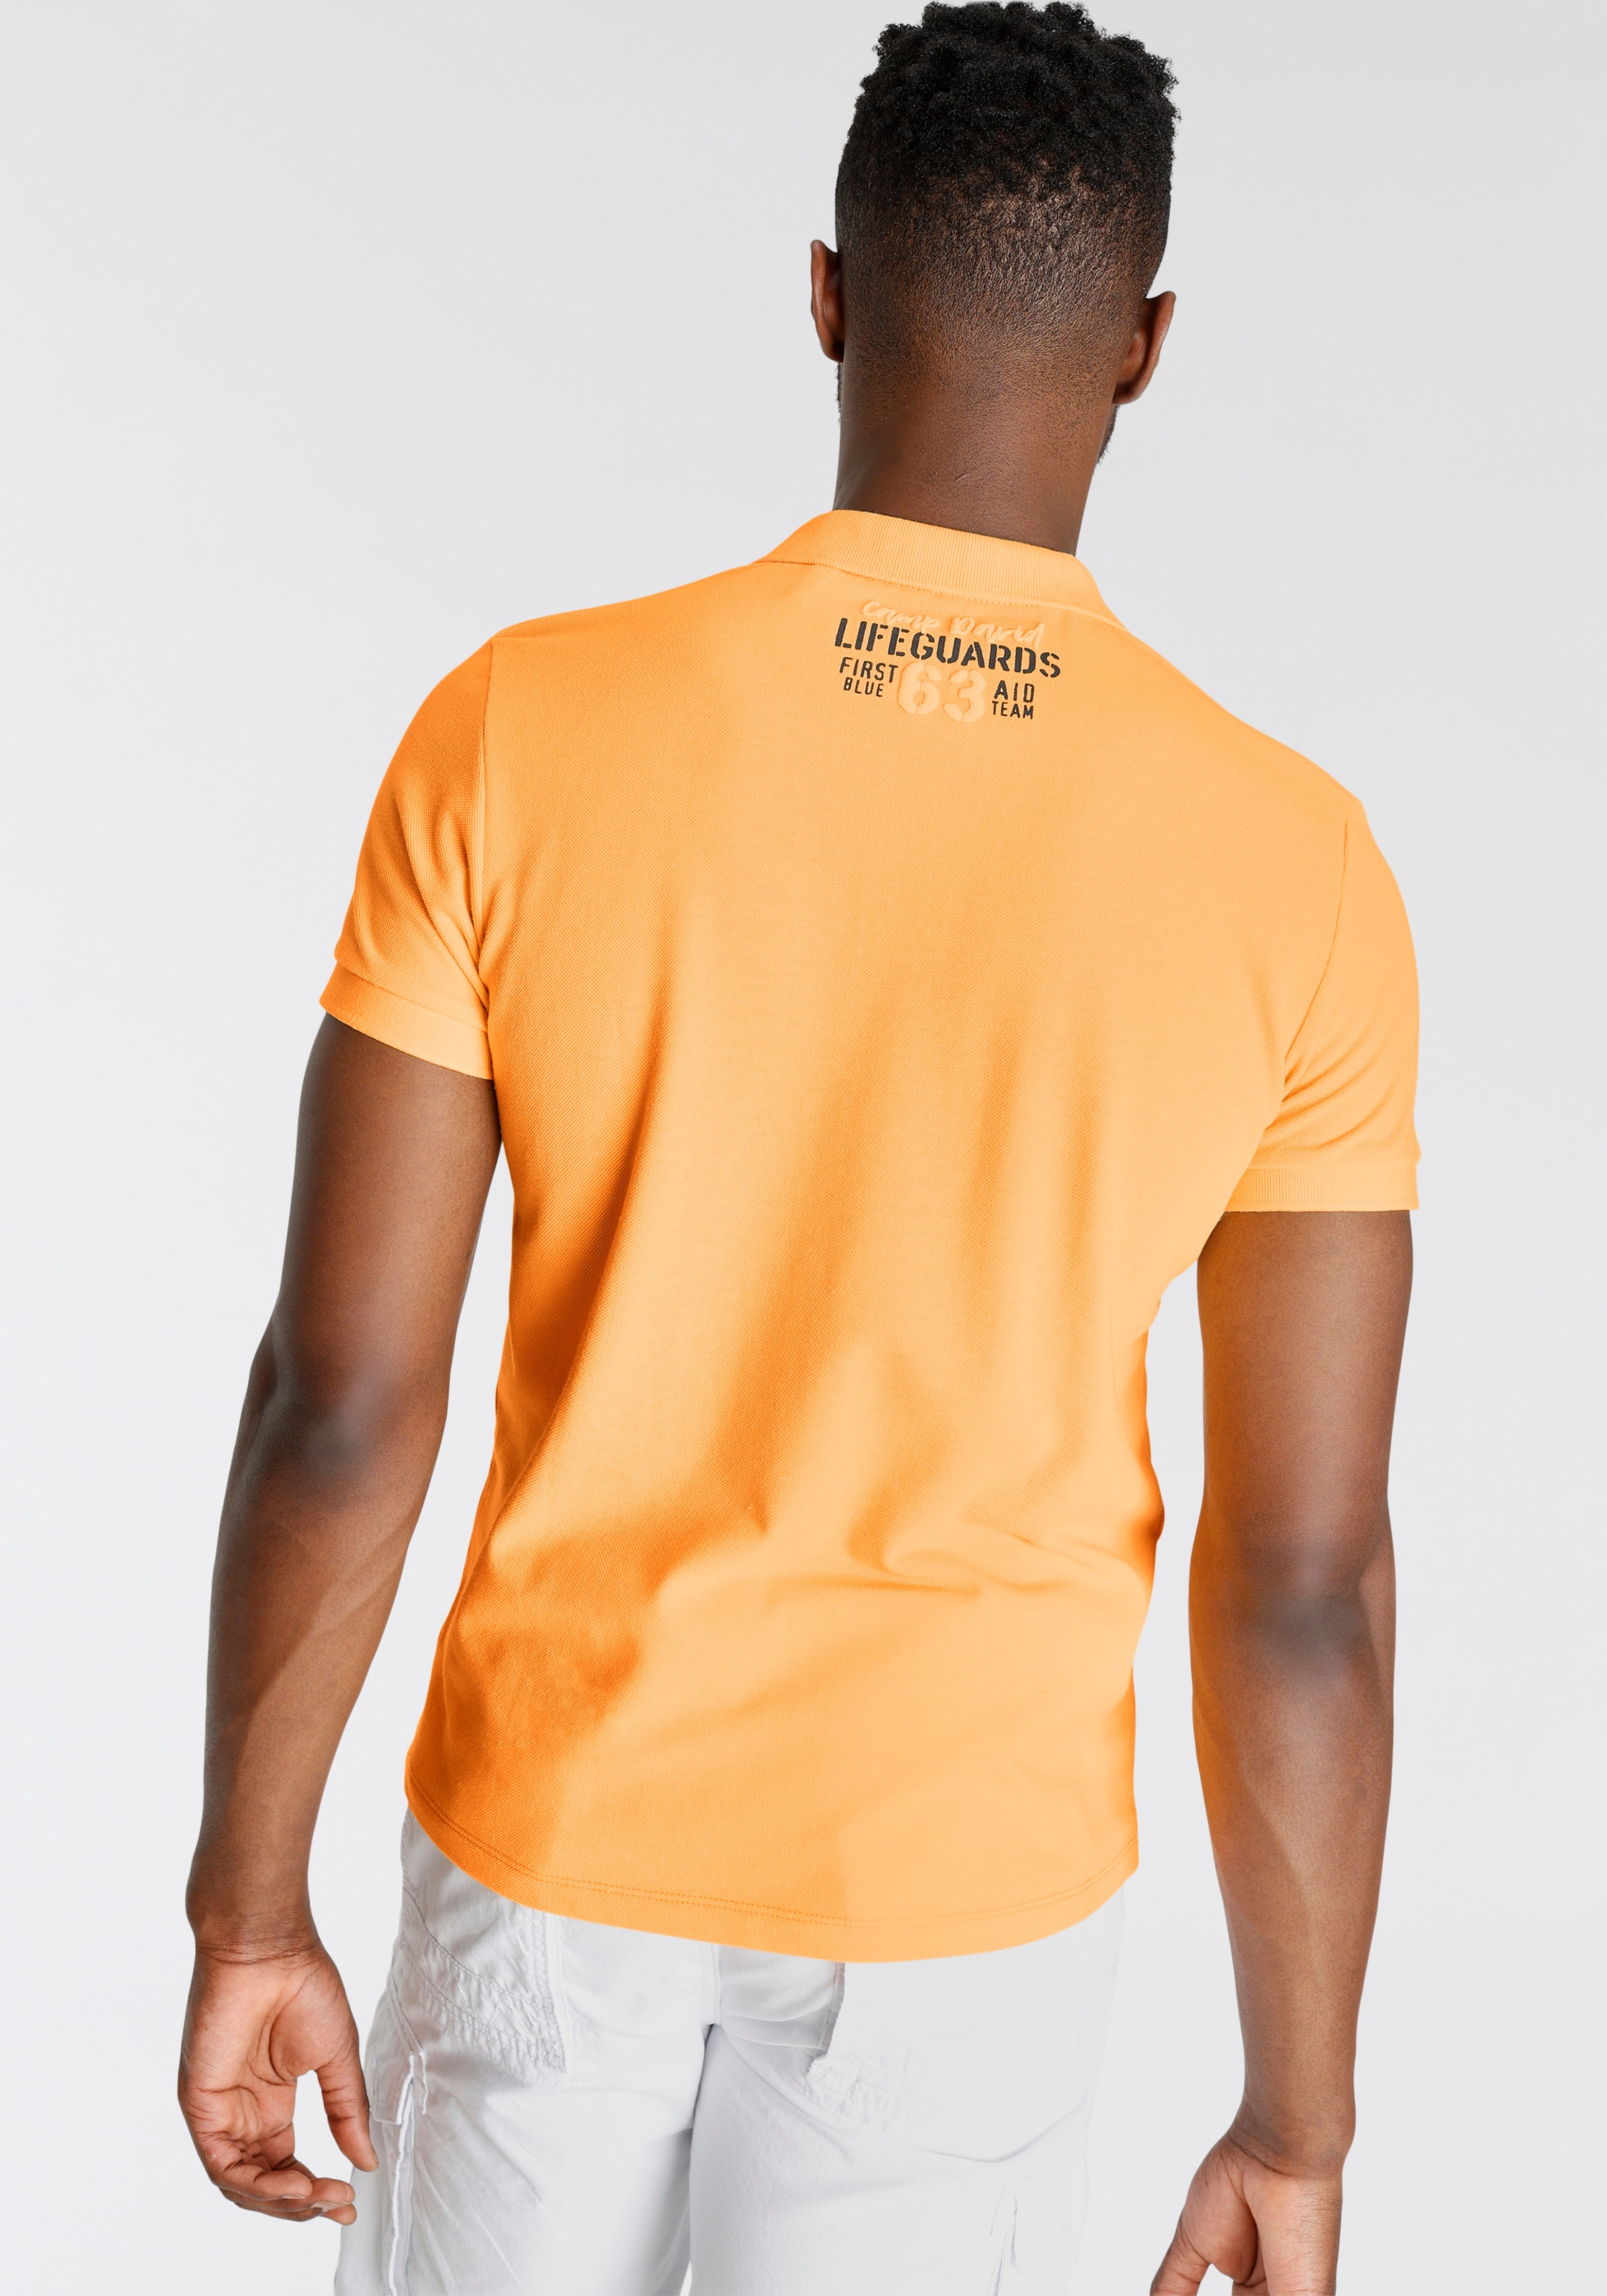 CAMP DAVID in Poloshirt, hochwertiger bei OTTO online bestellen Piqué-Qualität